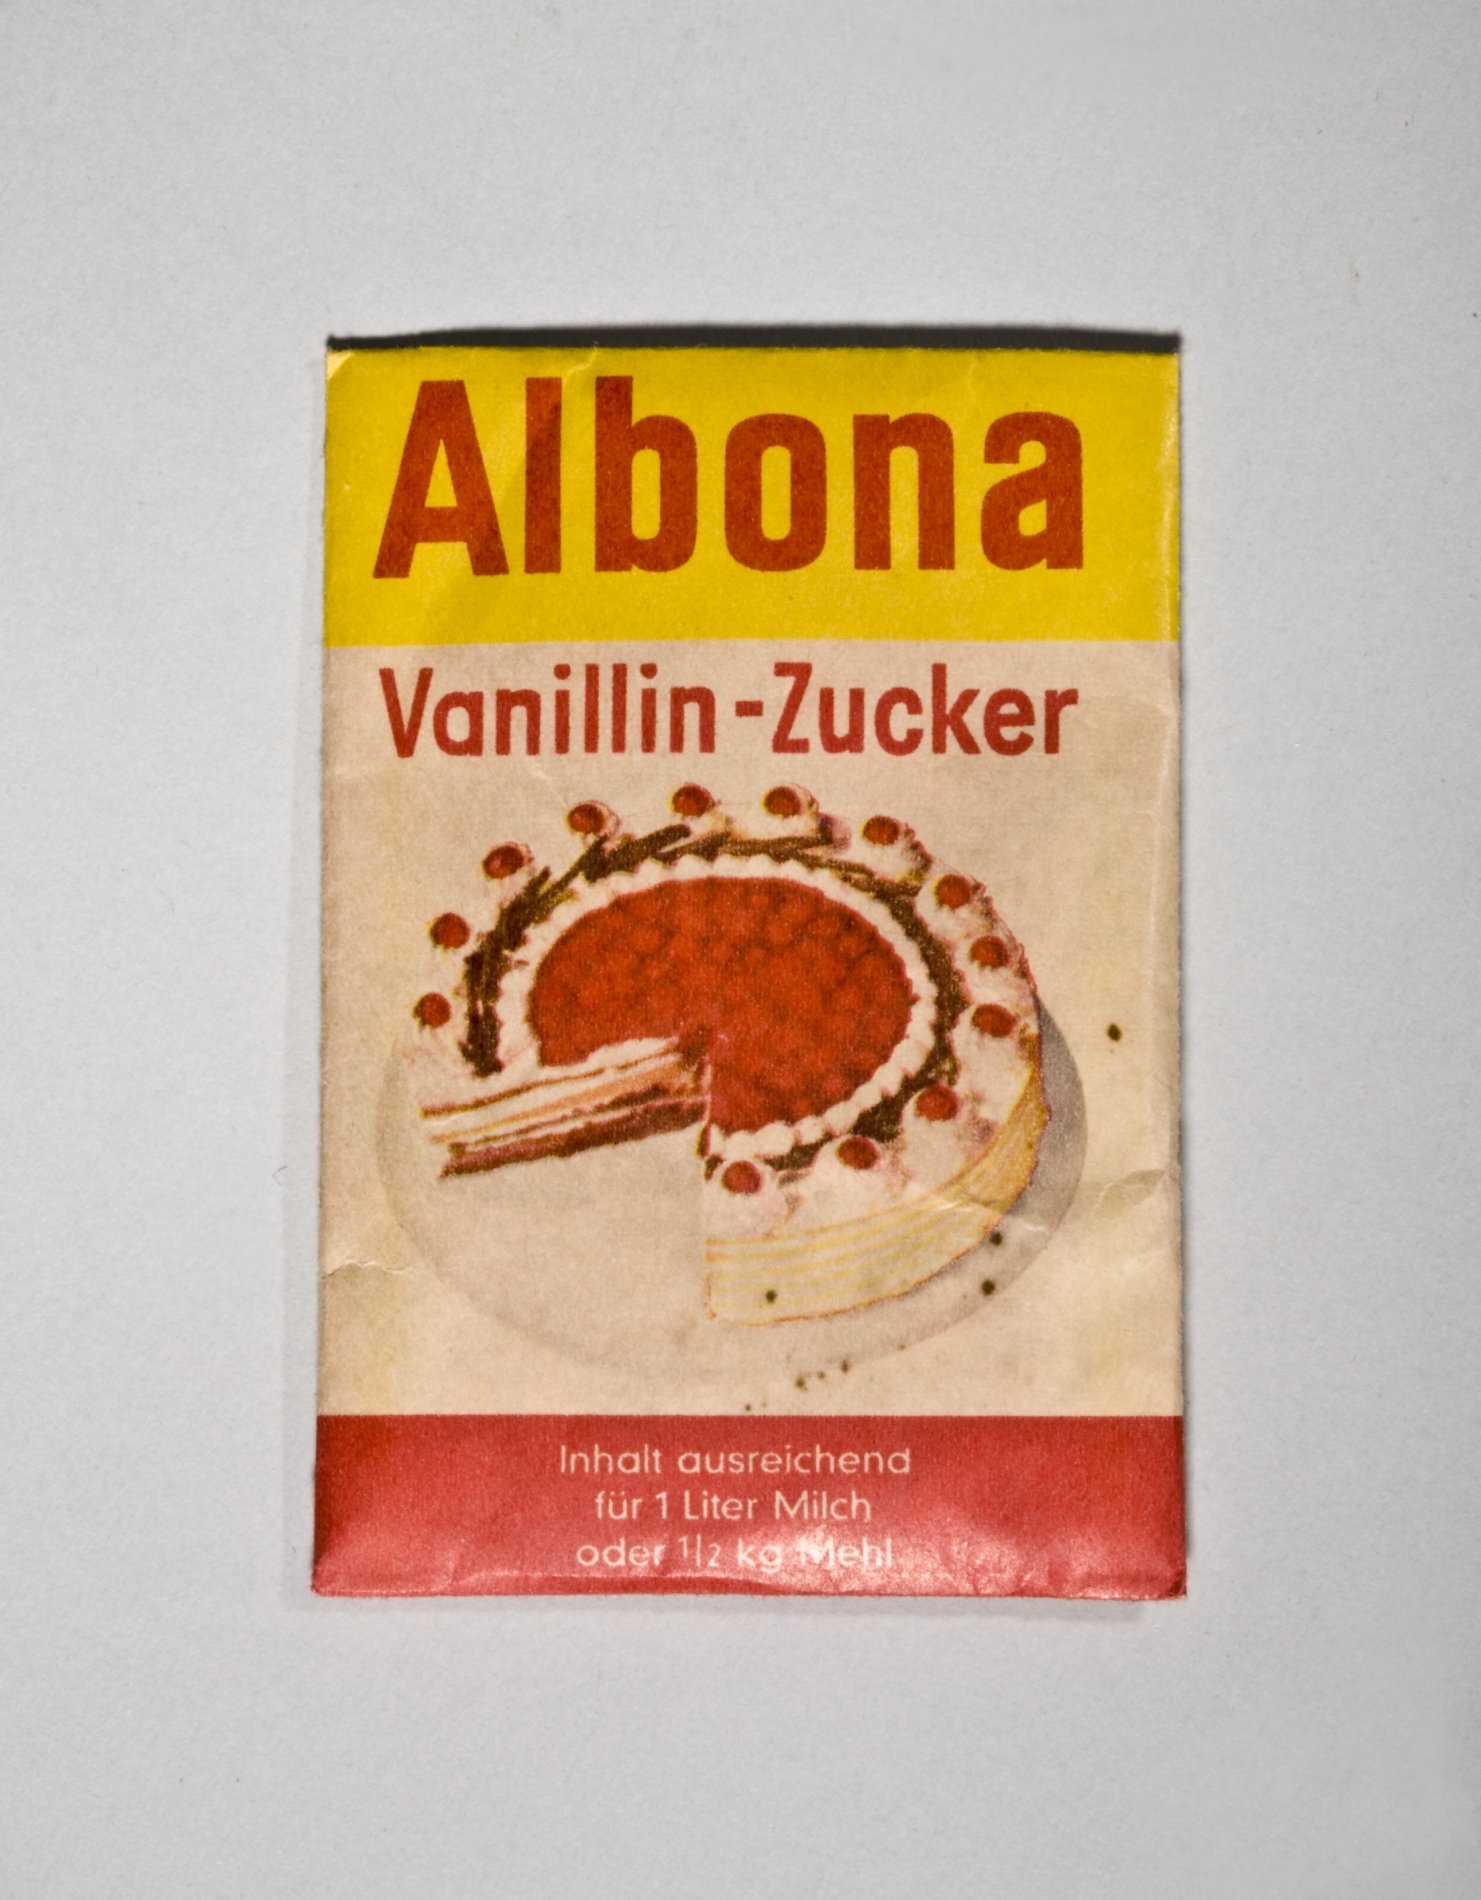 Päckchen "Vanillin-Zucker" von "Albona" (Stiftung Domäne Dahlem - Landgut und Museum, Weiternutzung nur mit Genehmigung des Museums CC BY-NC-SA)